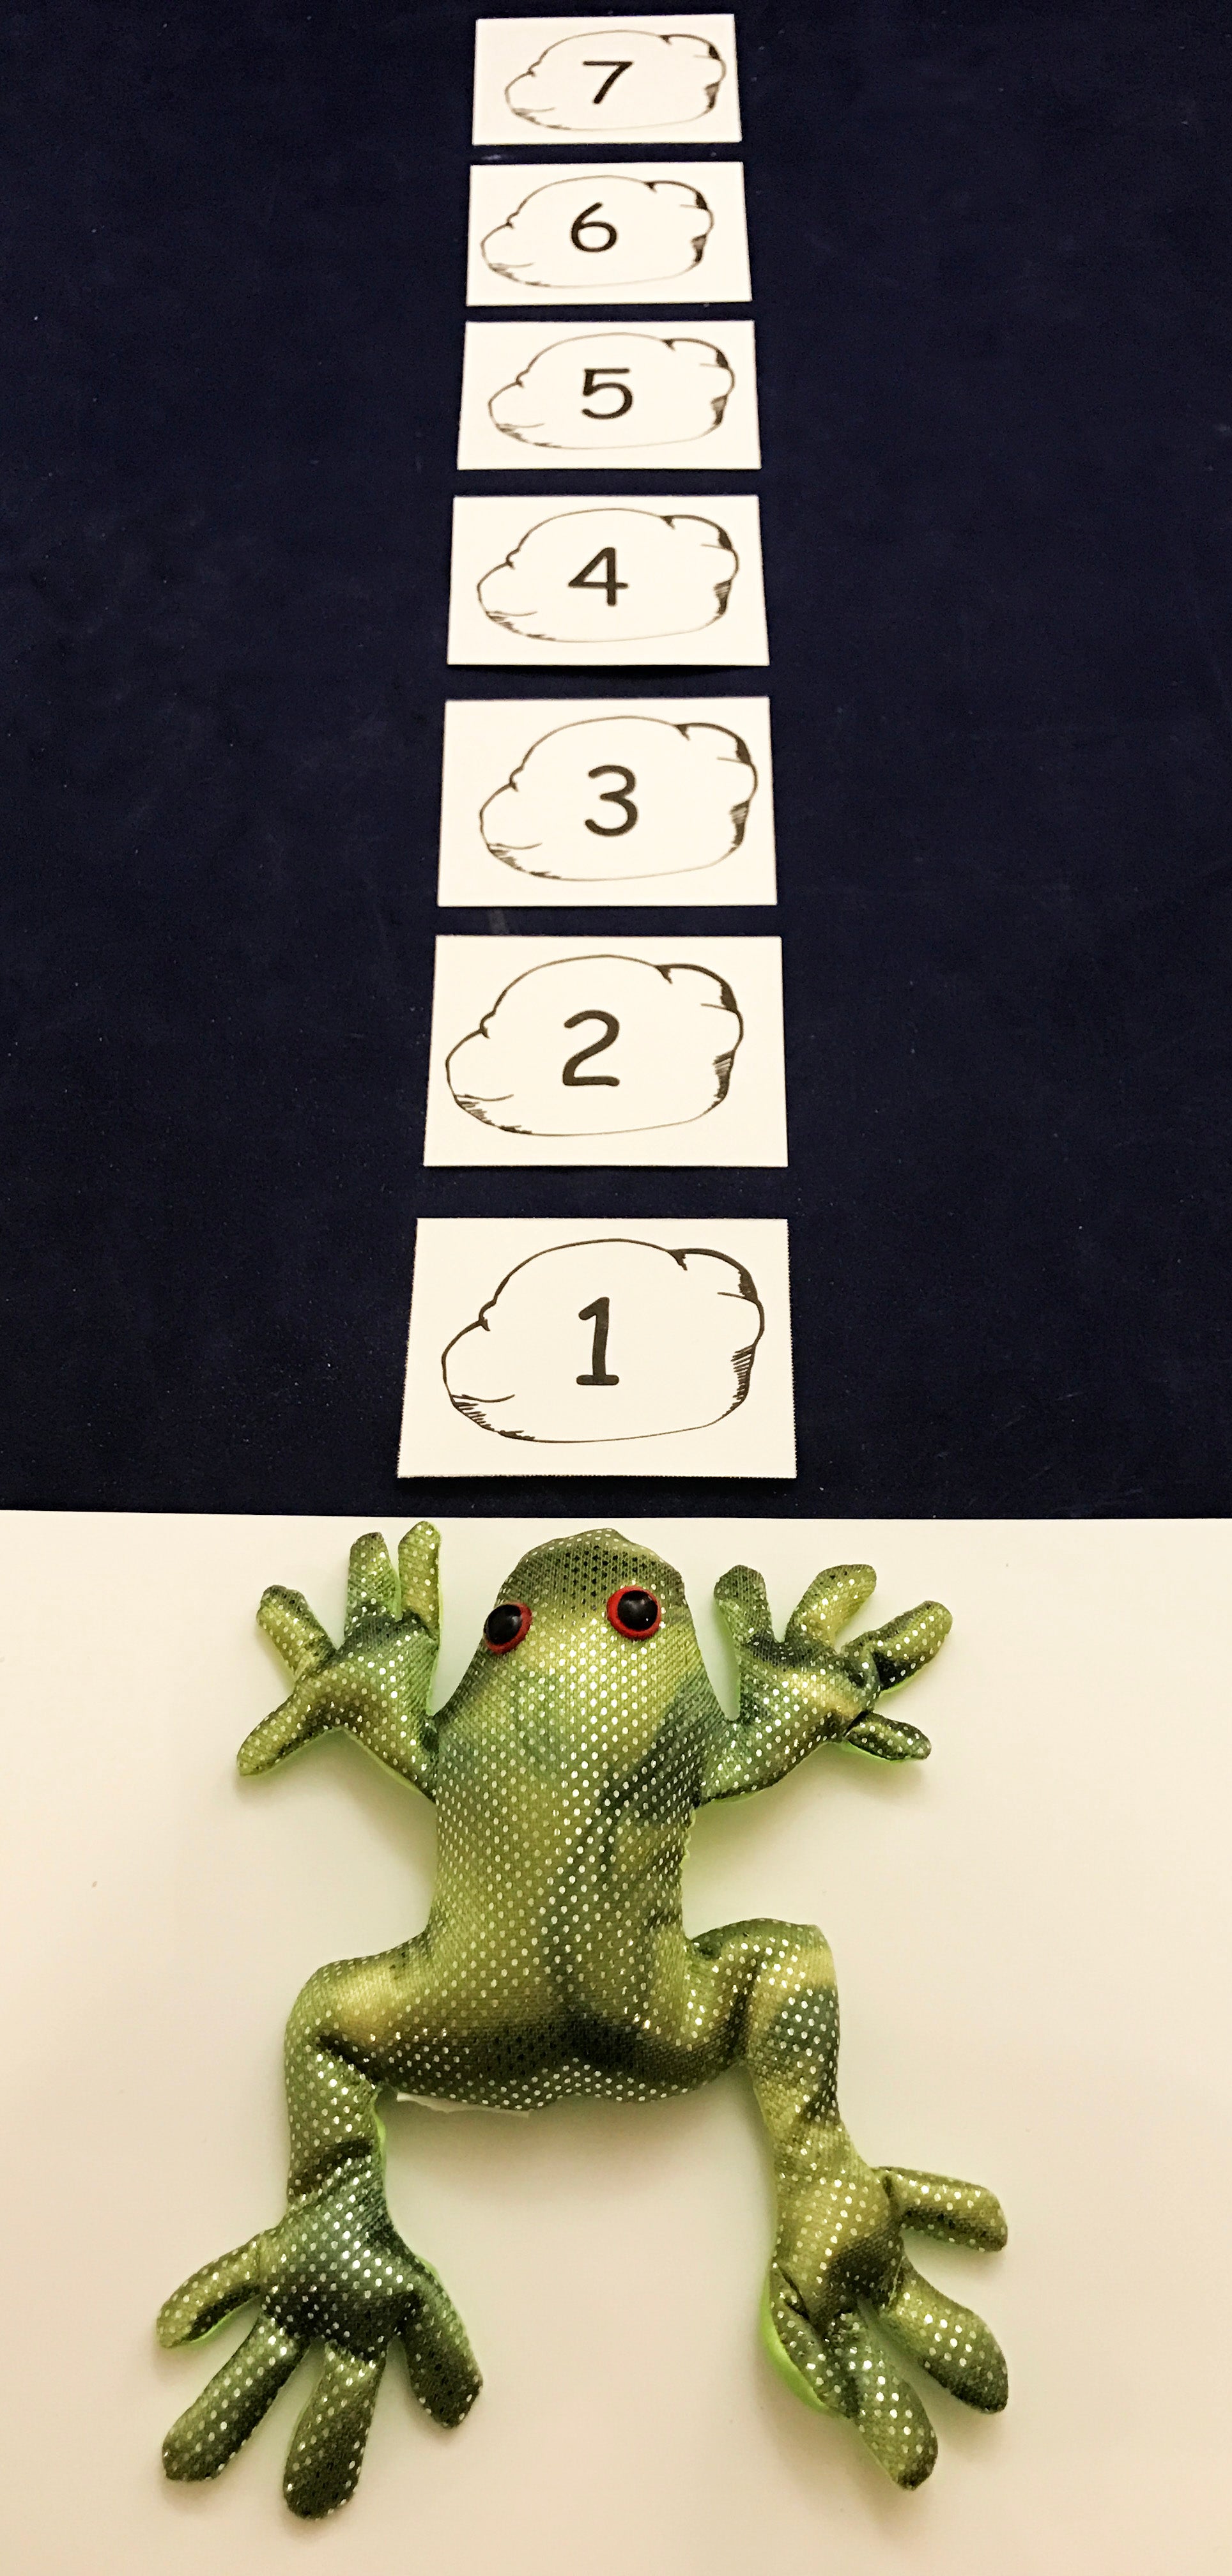 Sandbag frog toss number game